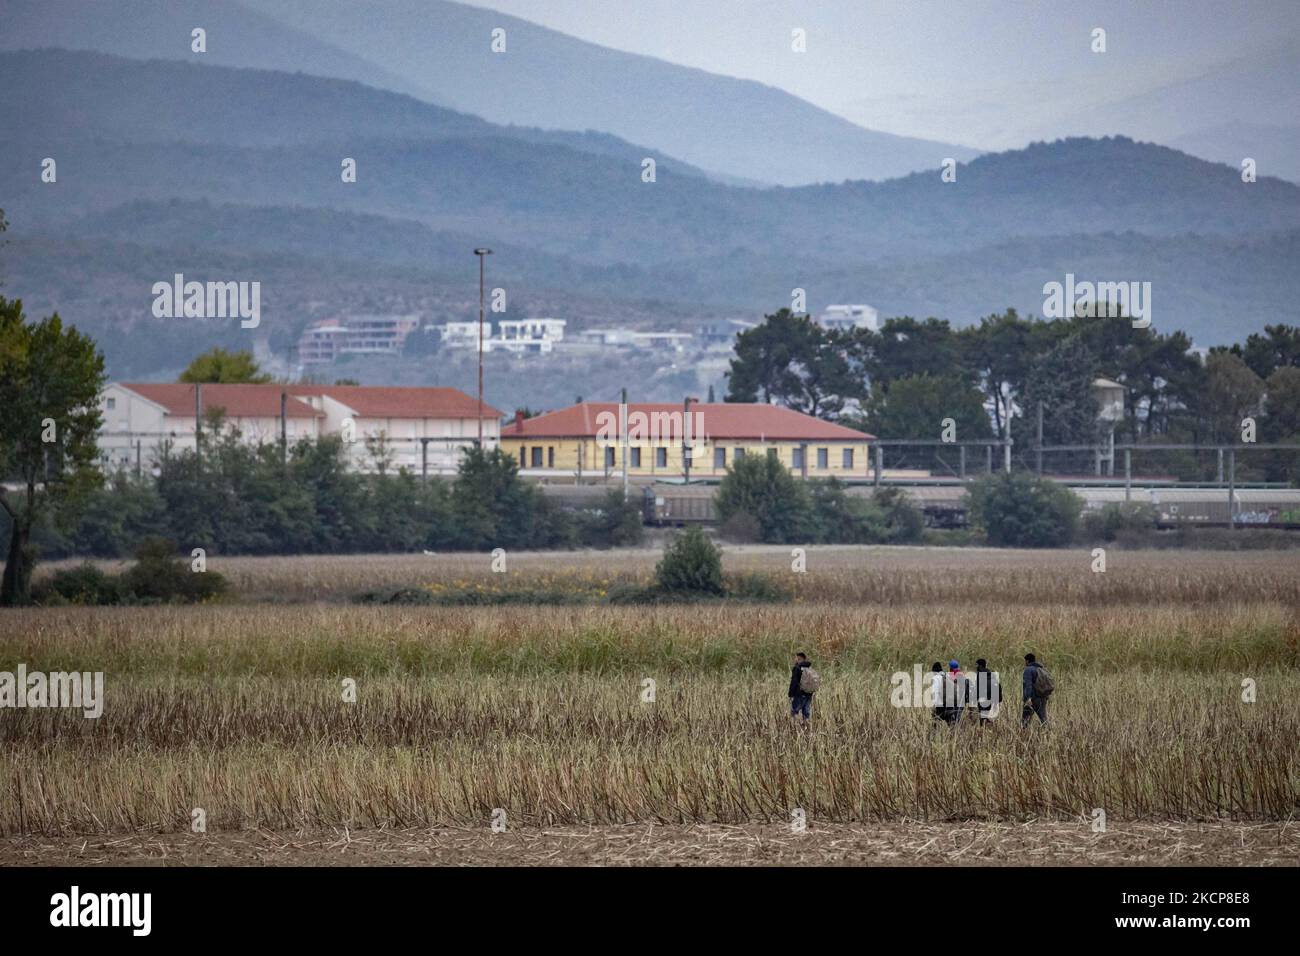 Migranten werden auf den Feldern mit dem ikonischen gelben Bahnhof von Idomeni und den Häusern in Nordmakedonien im Hintergrund gesehen. Asylbewerber versuchen, die griechisch-nordmazedonischen Grenzen zu überqueren, um der 2015-2016 während der syrischen Flüchtlingskrise berühmten Balkanroute zu folgen, von Idomeni, Griechenland, nach Gevgelija, Nord-Mazedonien, den Bahnschienen und dem Bahnhof folgend, um dann Mittel- und Nordeuropa zu erreichen. Flüchtlinge und Migranten werden auf den Feldern auf der griechischen Seite gesehen, vor dem Zaun, der die beiden Länder trennt, und versuchen, die Grenzen zu erreichen und zu passieren. Der kleine gr Stockfoto